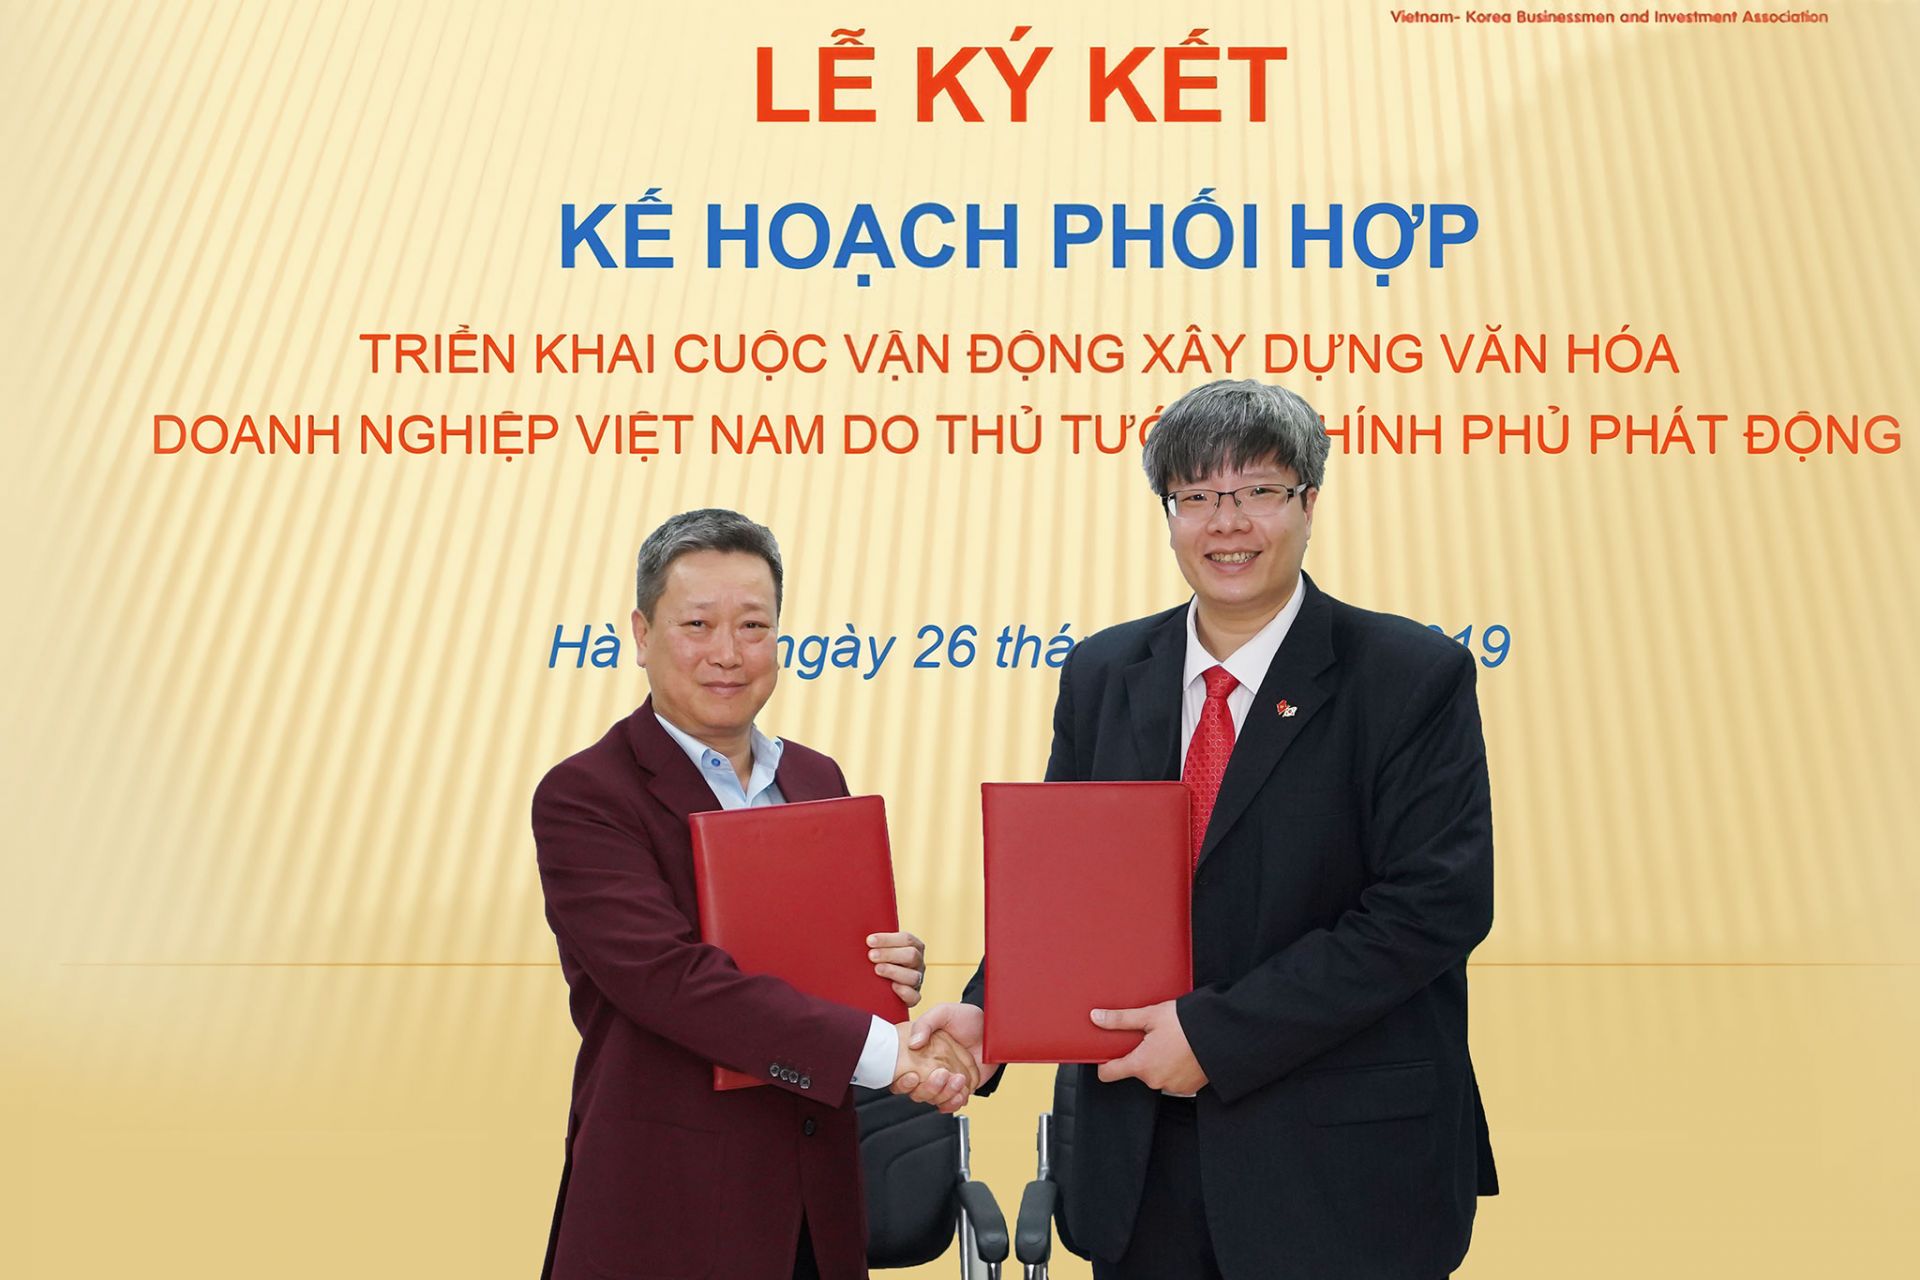 VKBIA ký kết hợp tác triển khai Cuộc vận động xây dựng văn hóa Doanh nghiệp Việt Nam